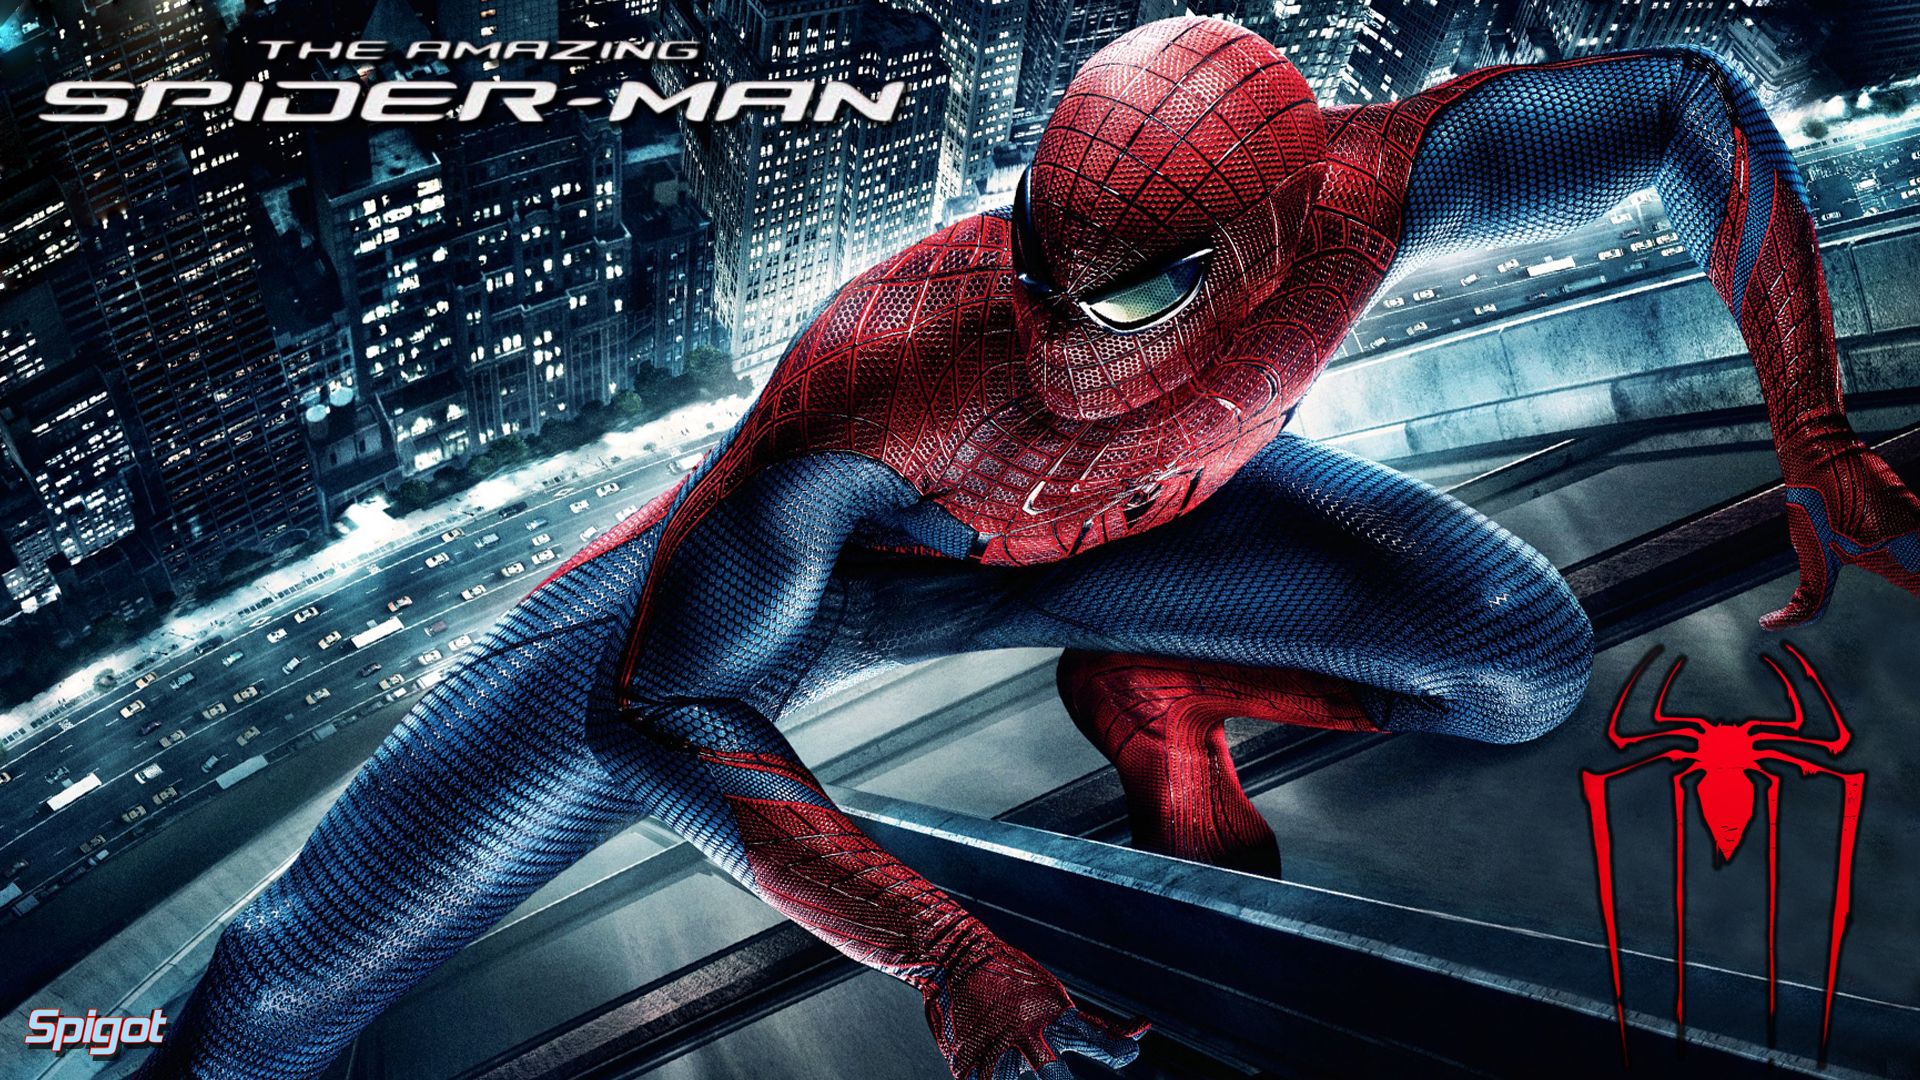 Amazing Spider-Man | George Spigot's Blog